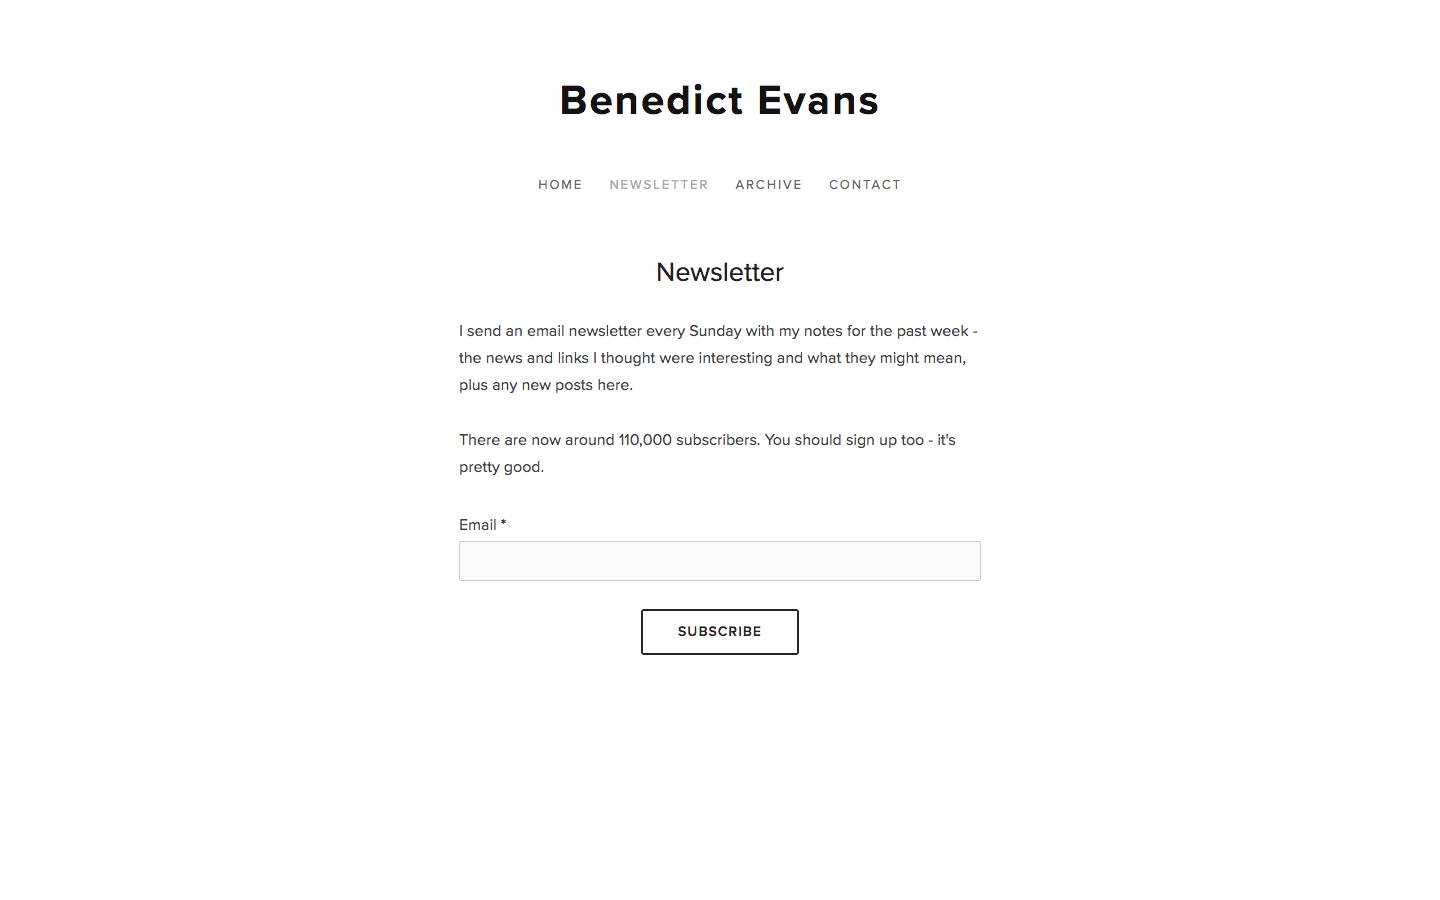 Benedict Evans homepage